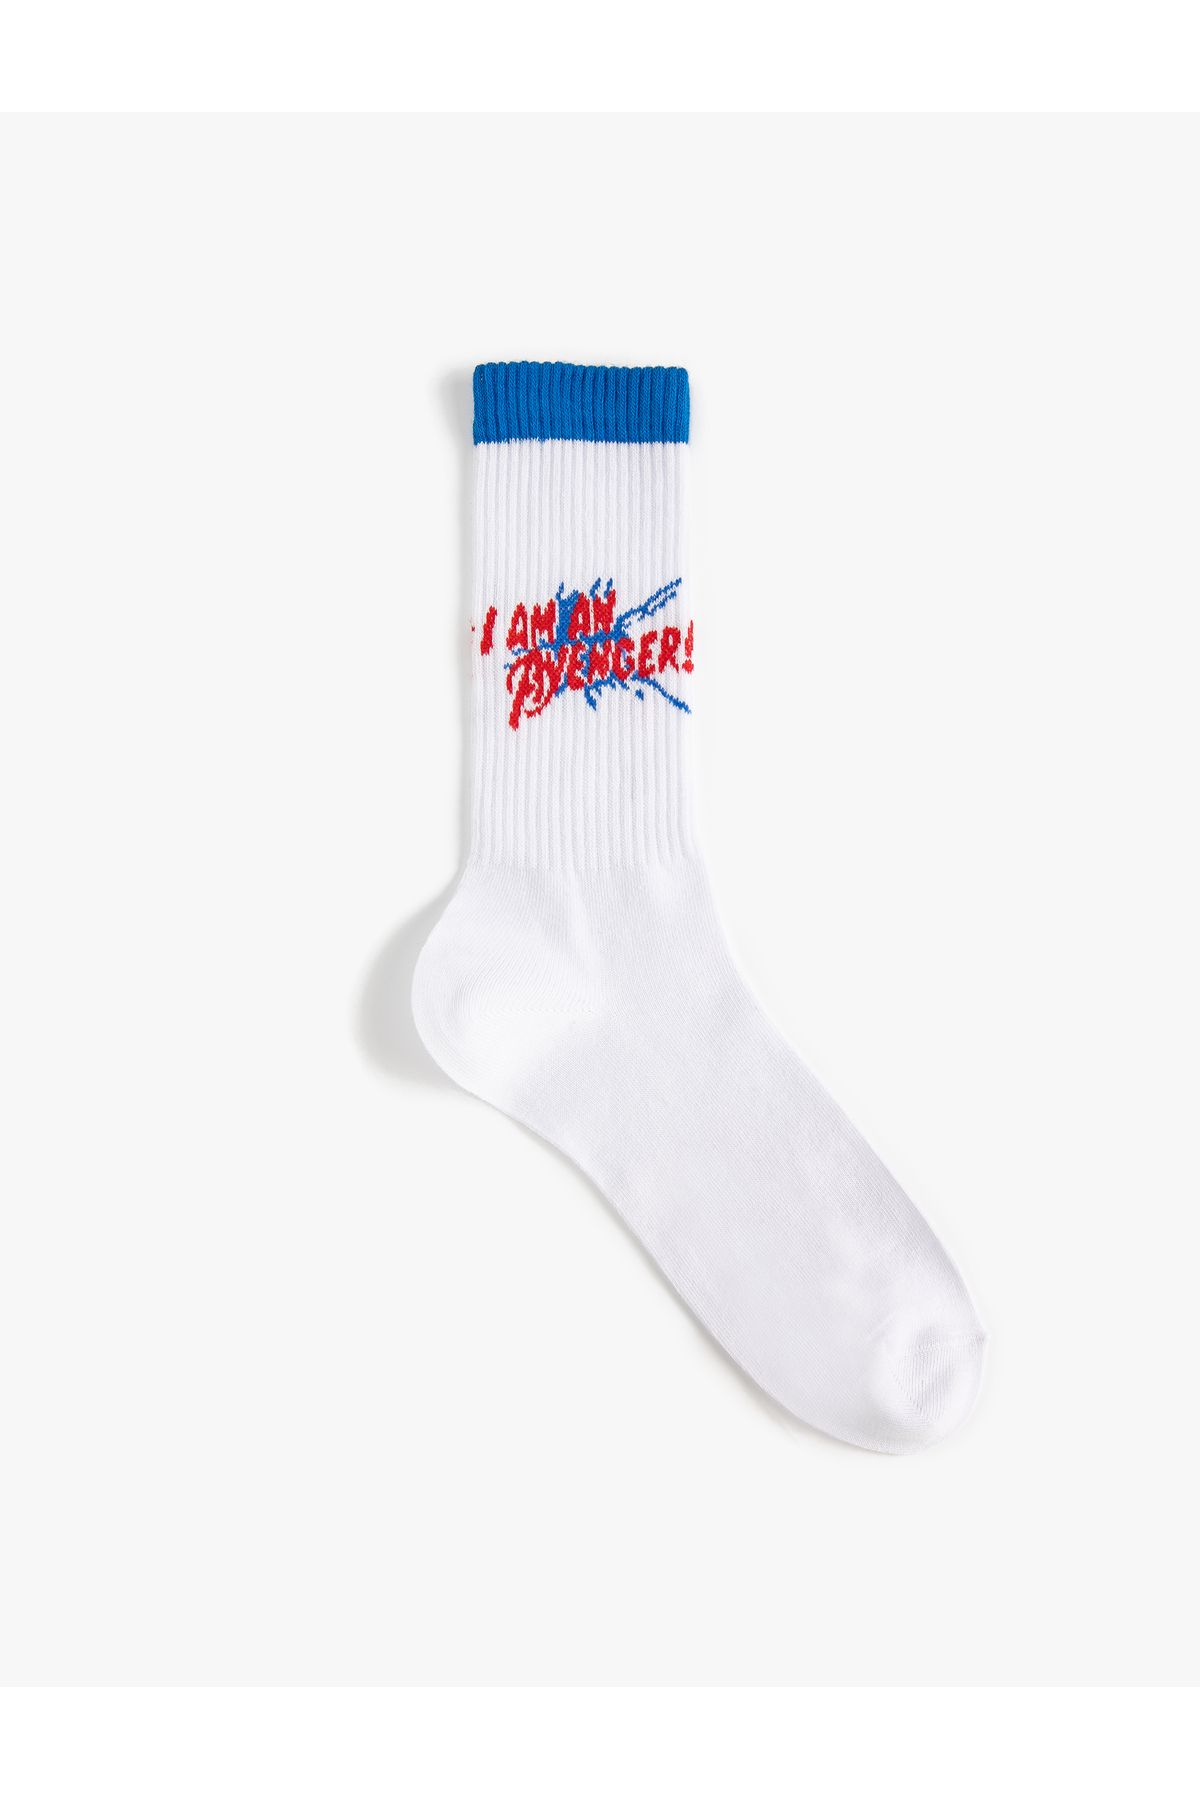 Koton Avengers Soket Çorap Lisanslı Işlemeli